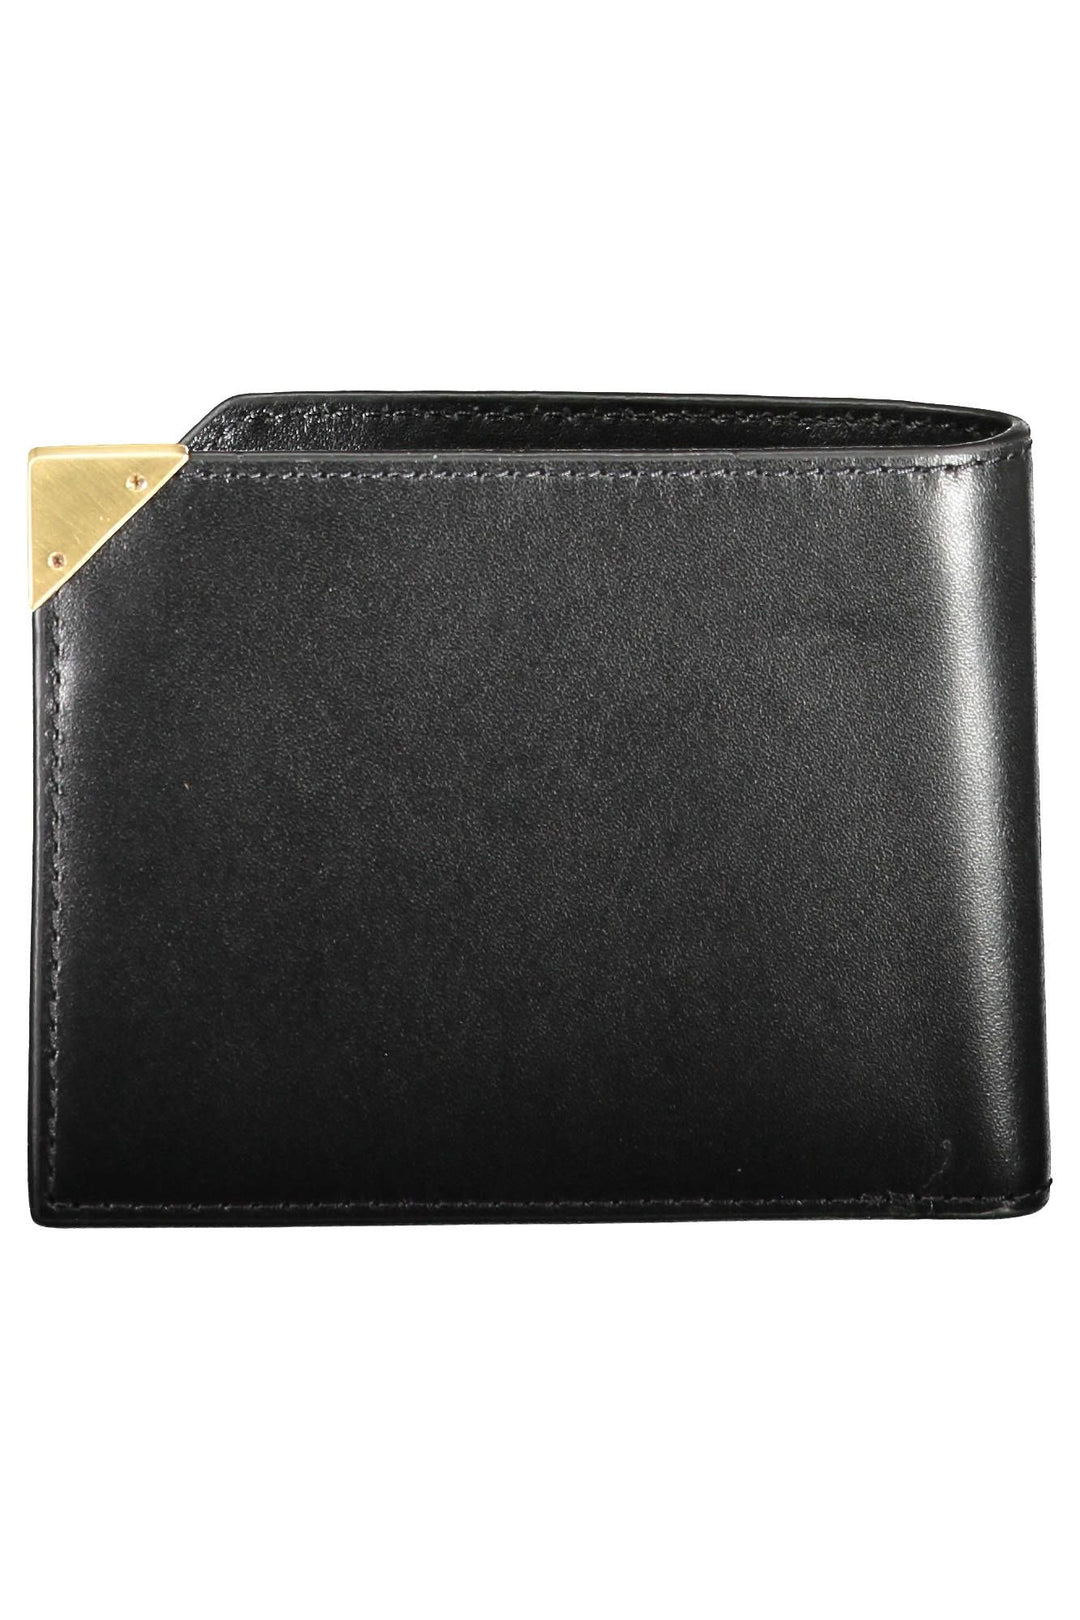 Calvin Klein Sleek RFID-Protected Black Leather Wallet